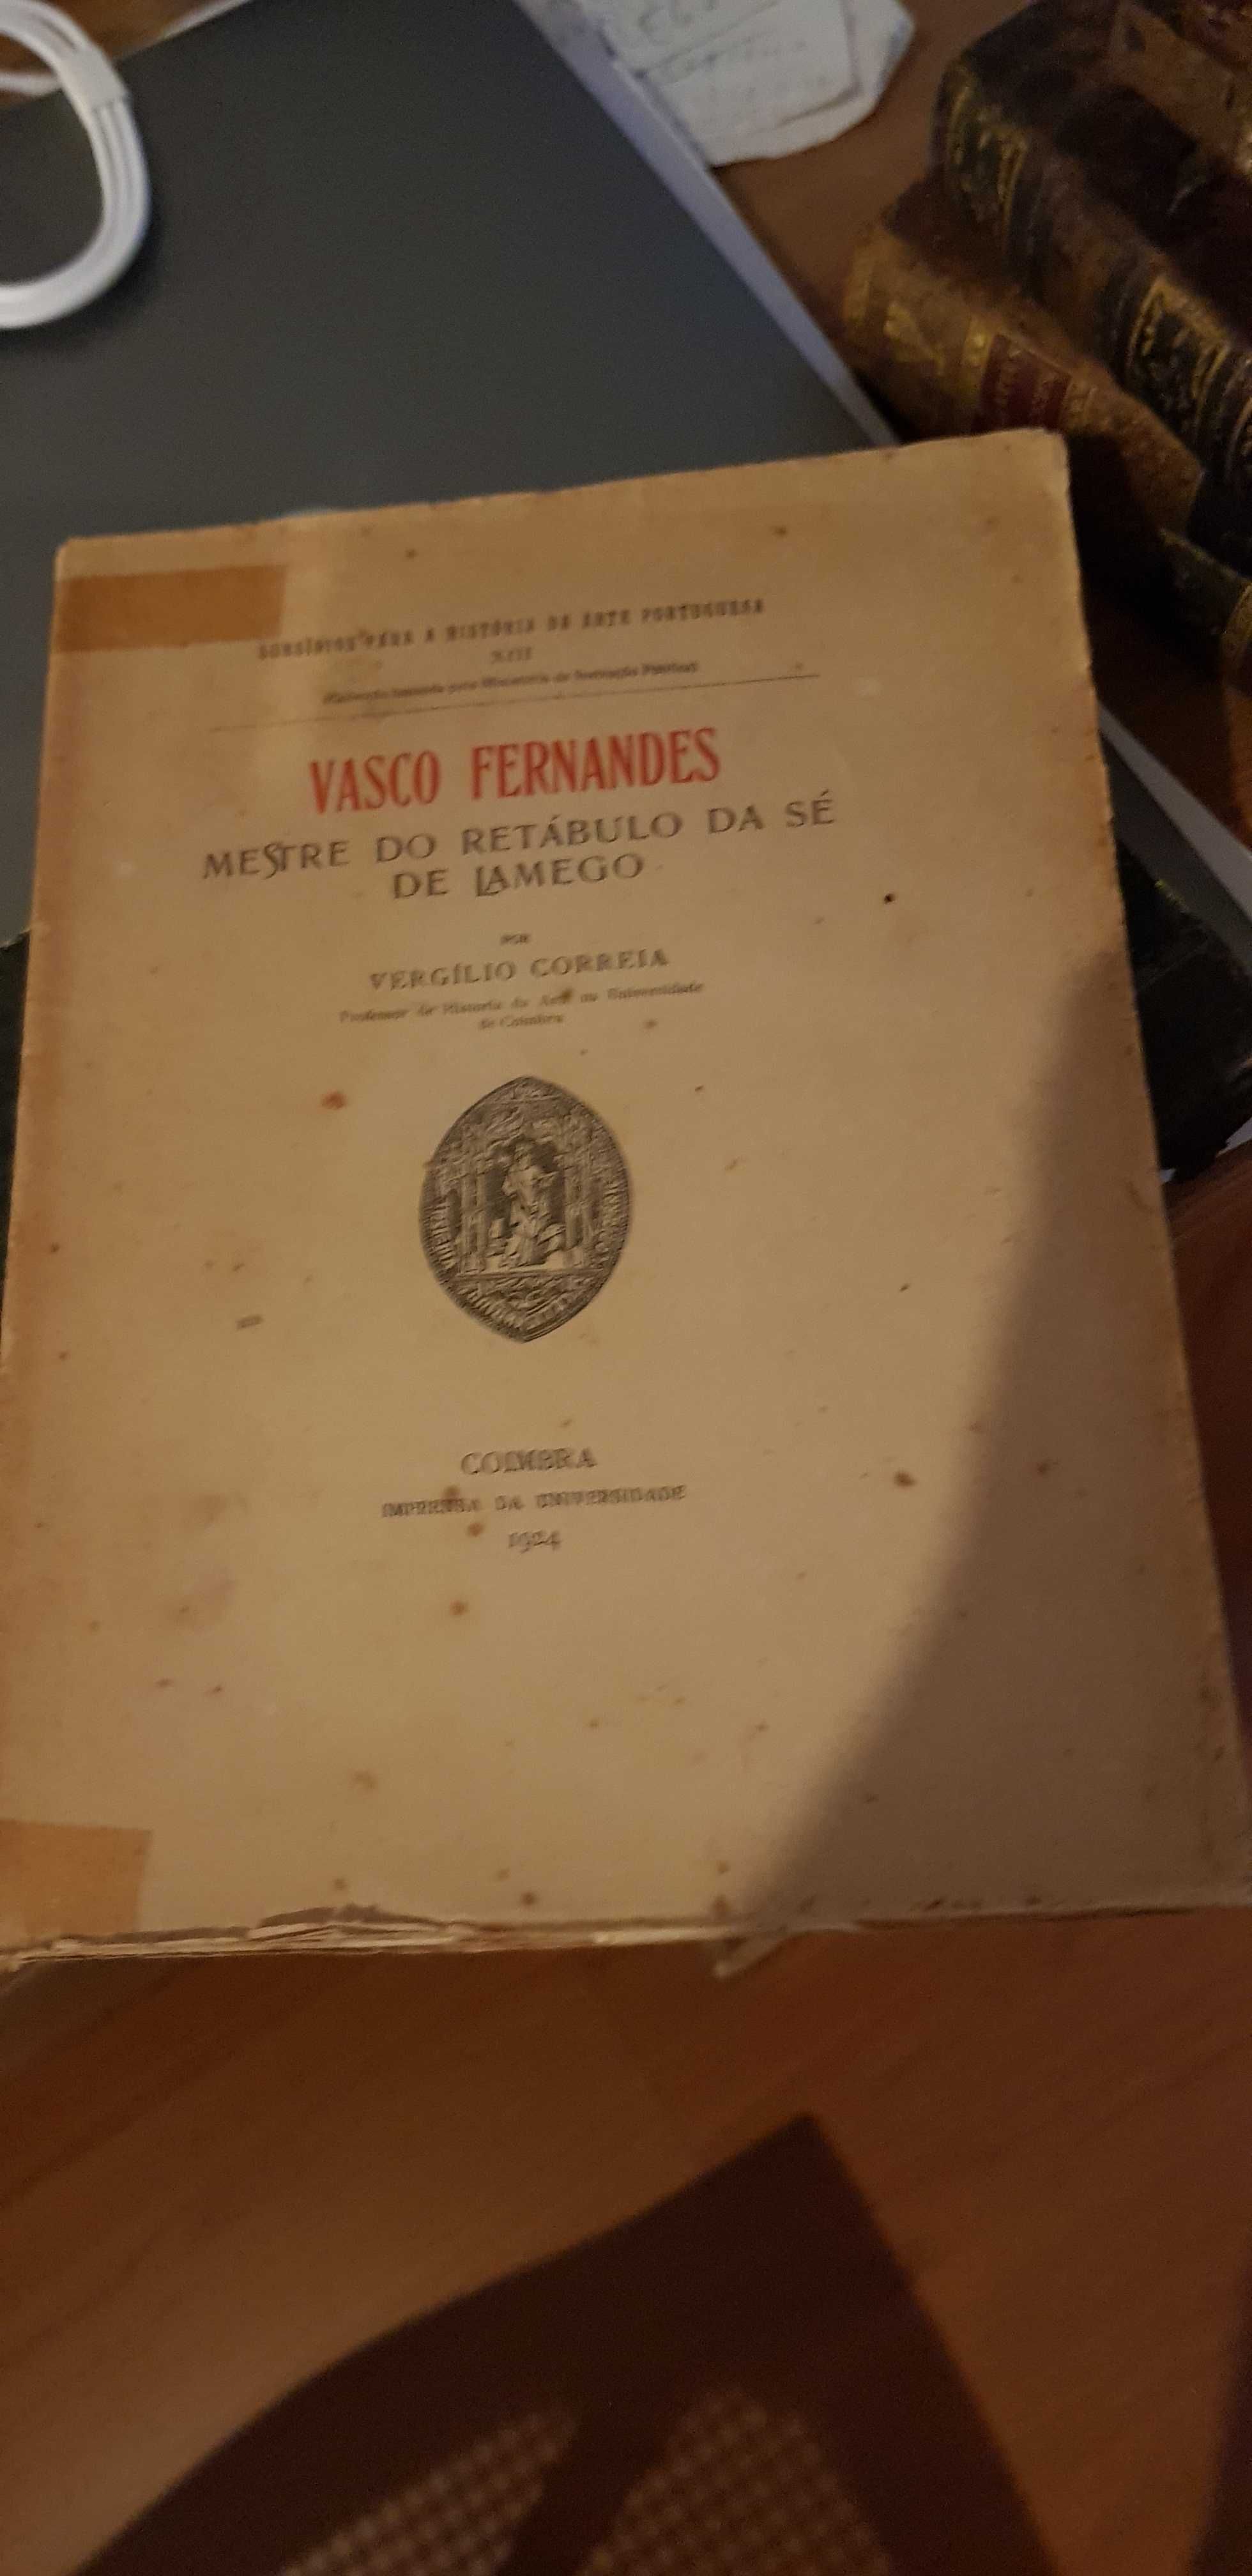 Vasco Fernandes- Mestre do Retábulo da Sé de Lamego